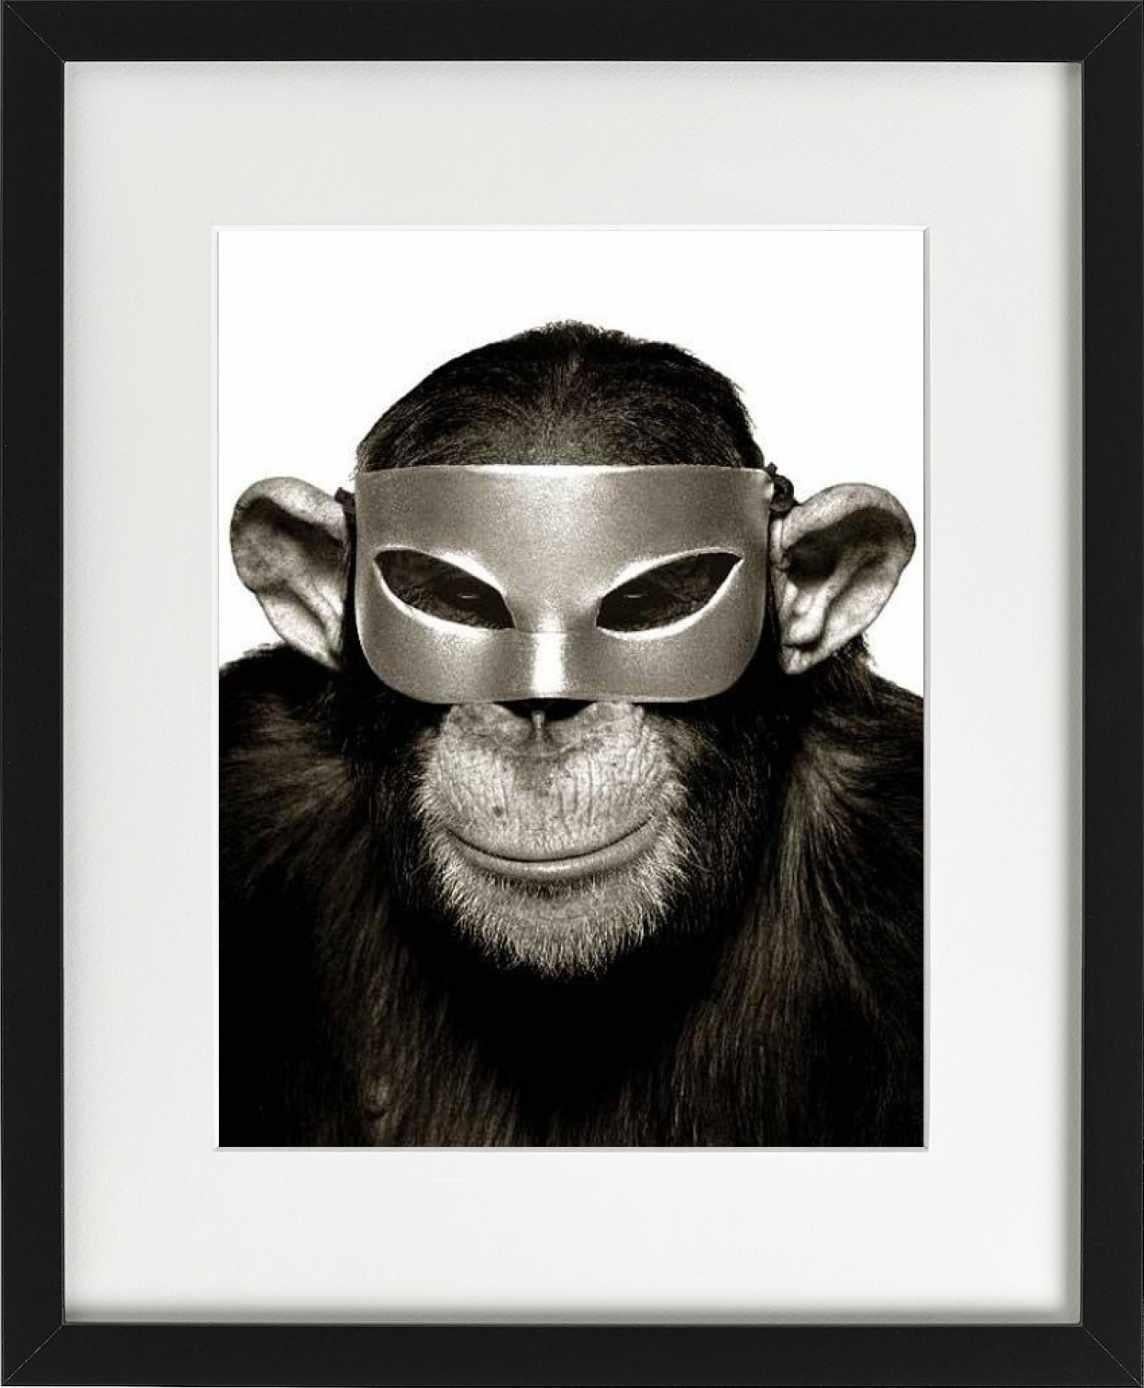 Affen mit Maske – Tierporträt mit Maske, Kunstfotografie, 1992 (Schwarz), Black and White Photograph, von Albert Watson